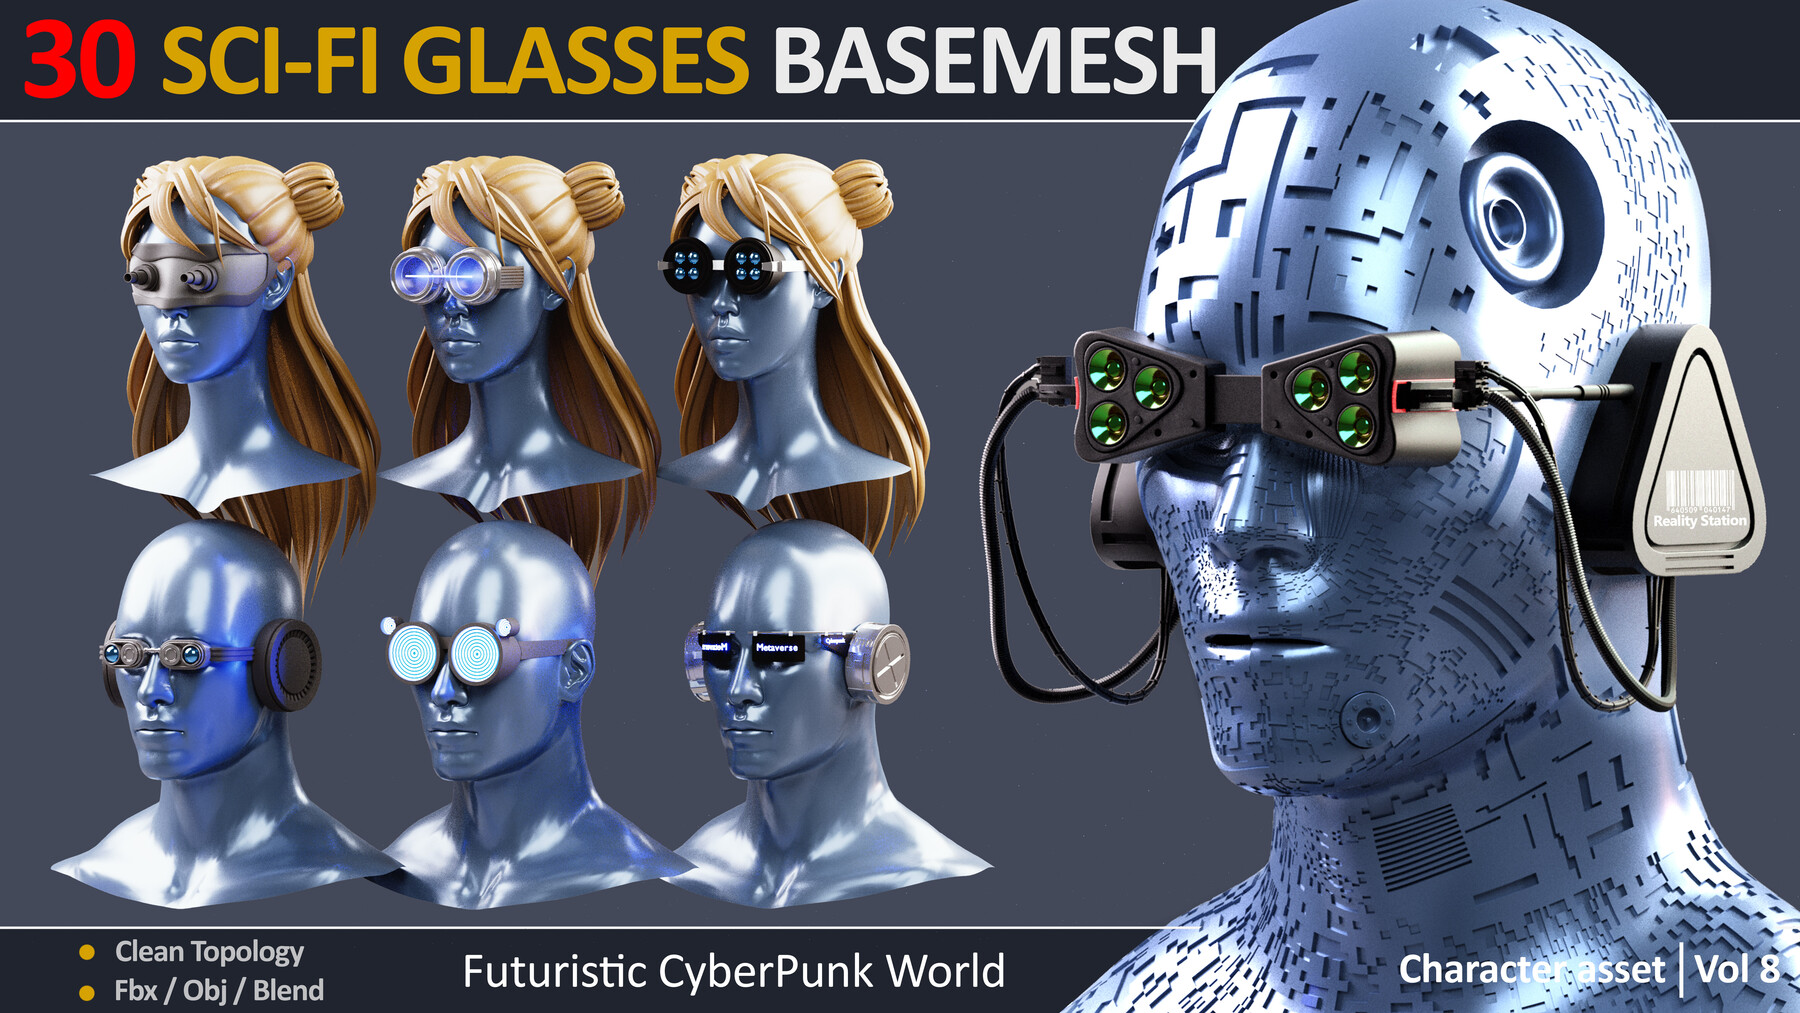 чит на очки способностей в cyberpunk фото 46